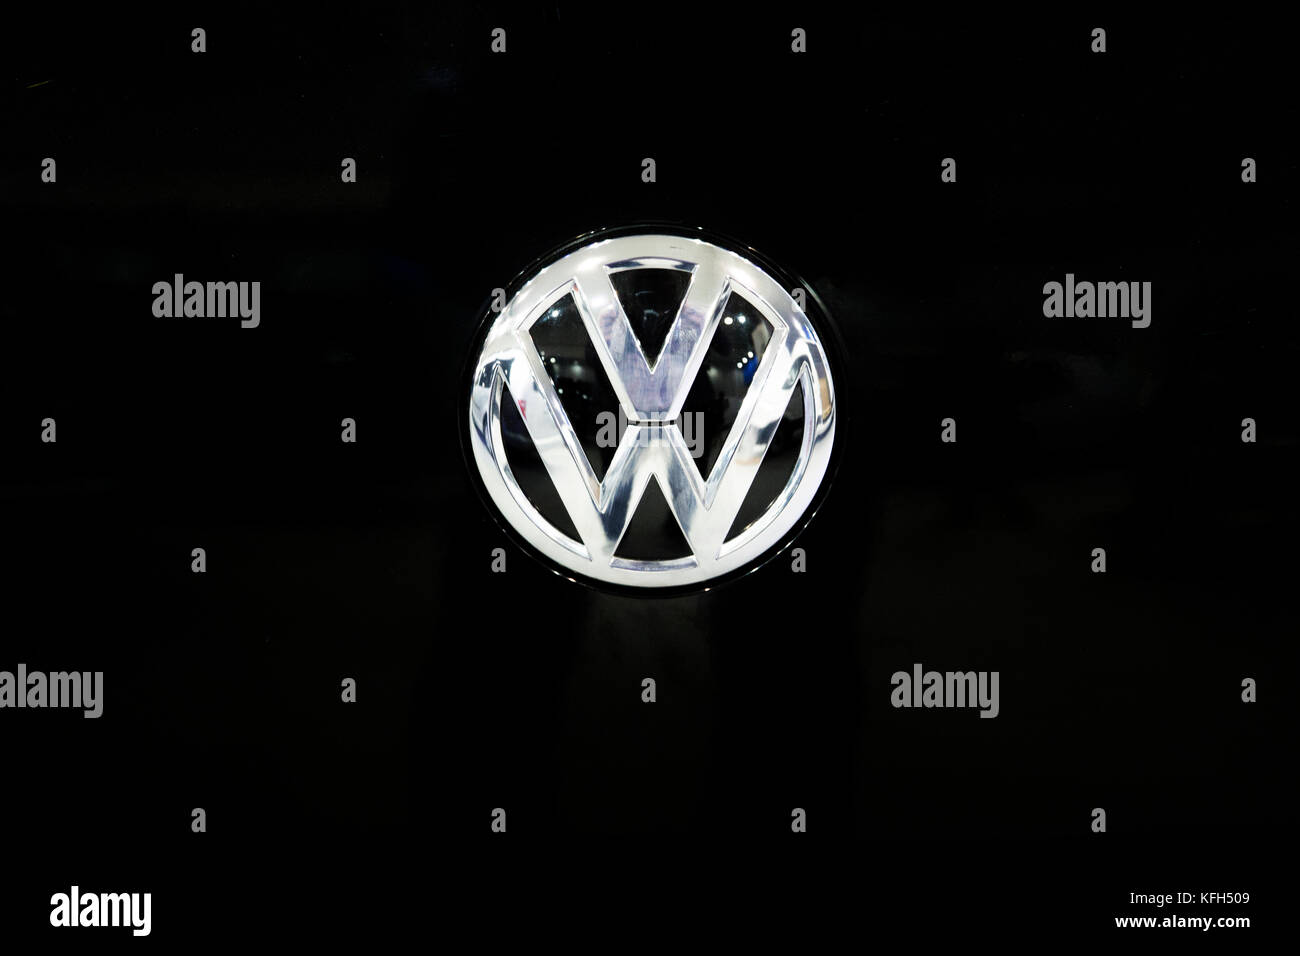 Volkswagen, VW logo, imagen corporativa, rotulación, opcional, fondo  blanco, Alemania Fotografía de stock - Alamy